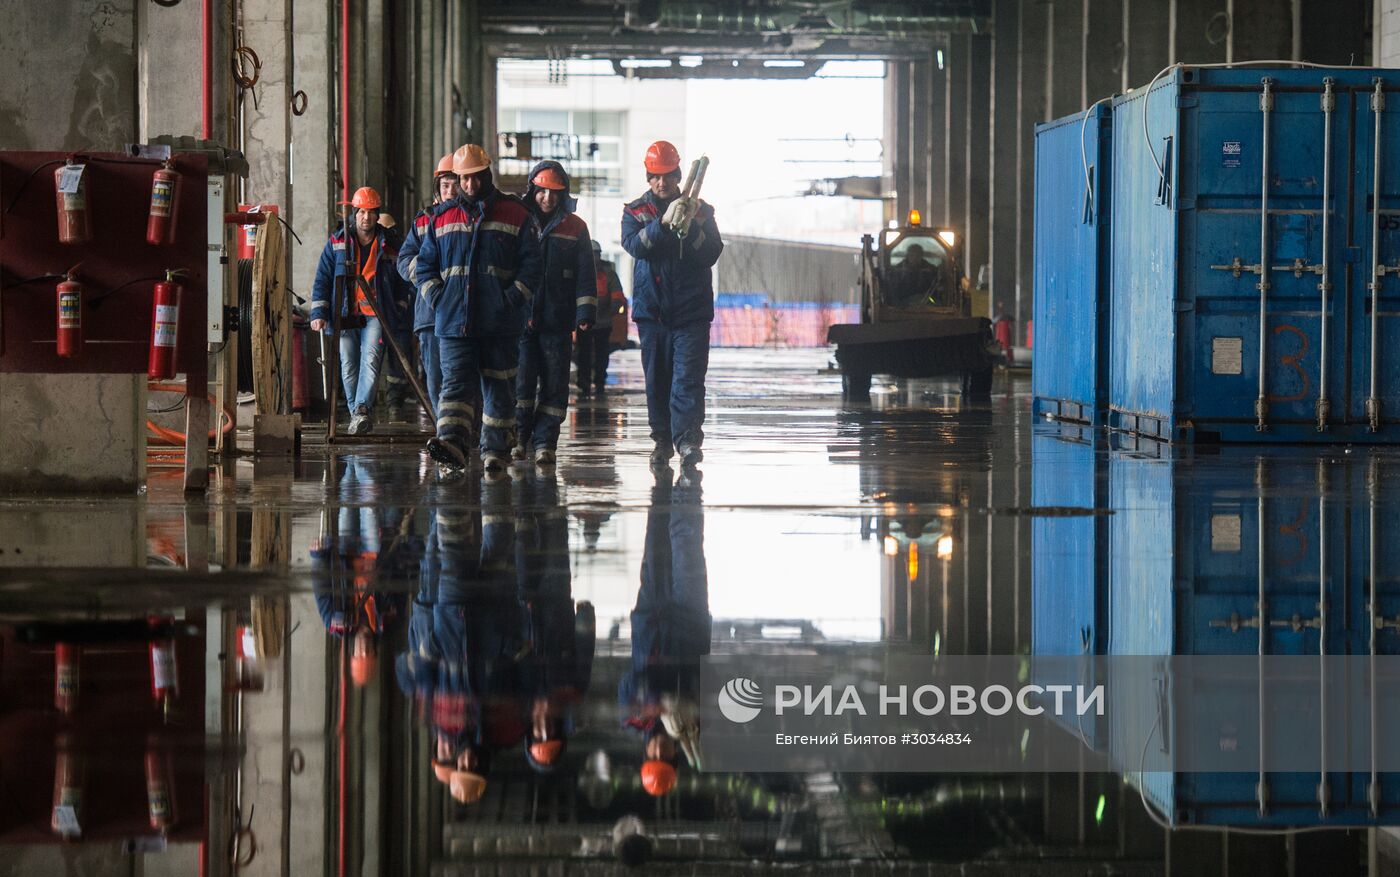 Завершены работы по проходке тоннелей межтерминального перехода в аэропорту Шереметьево